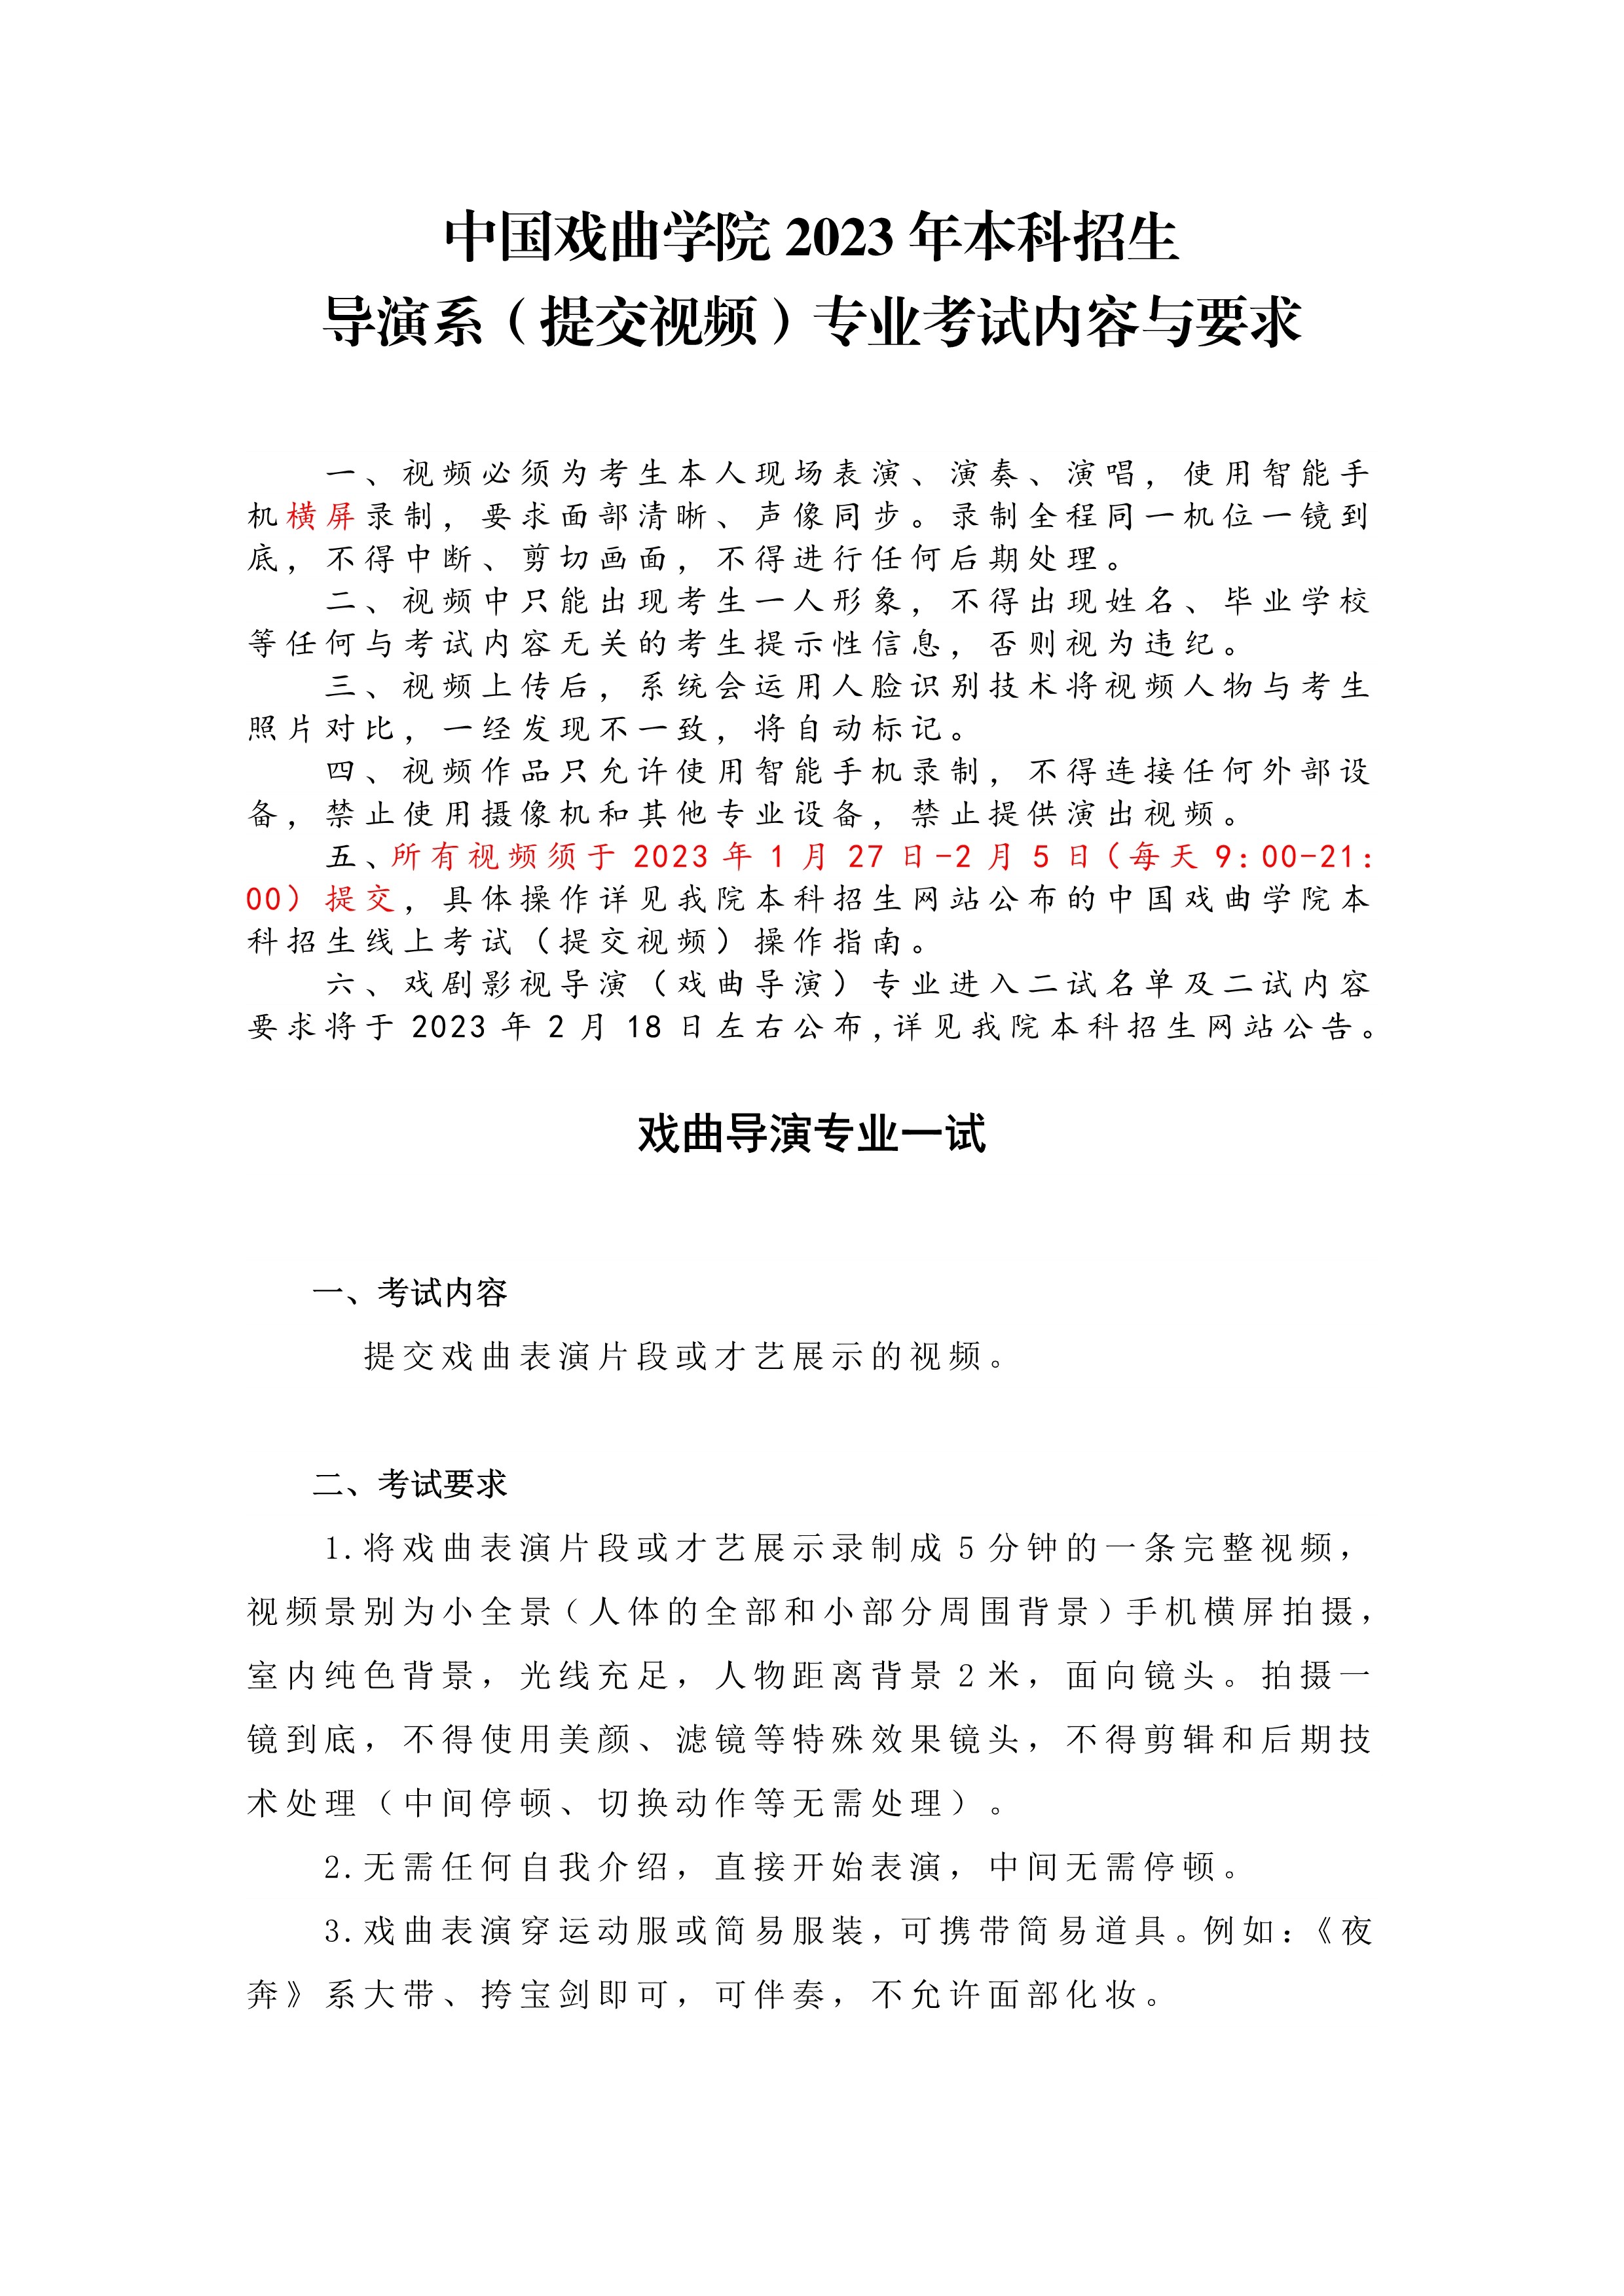 中国戏曲学院2023年本科招生导演系（提交视频）专业考试内容与要求_1.jpg